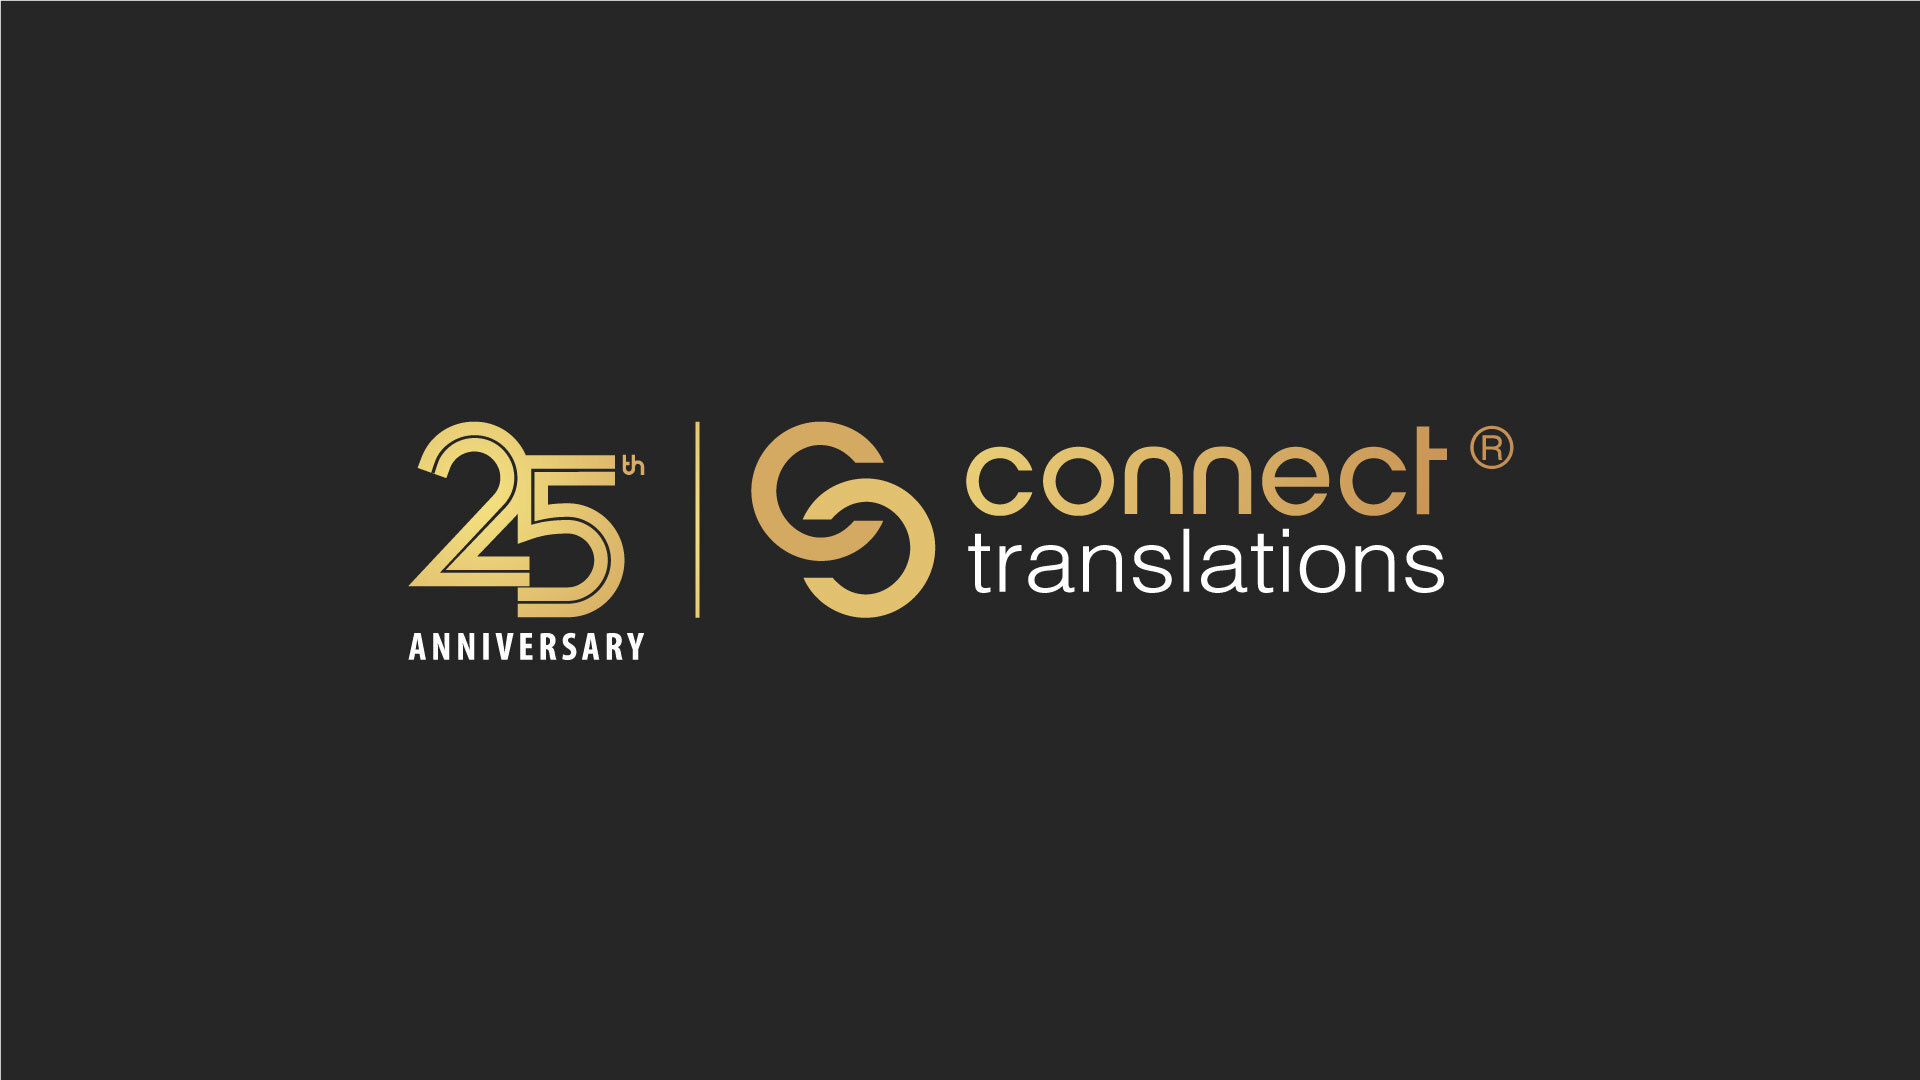 Connect Translations expandiert zum 25. Jubiläum international